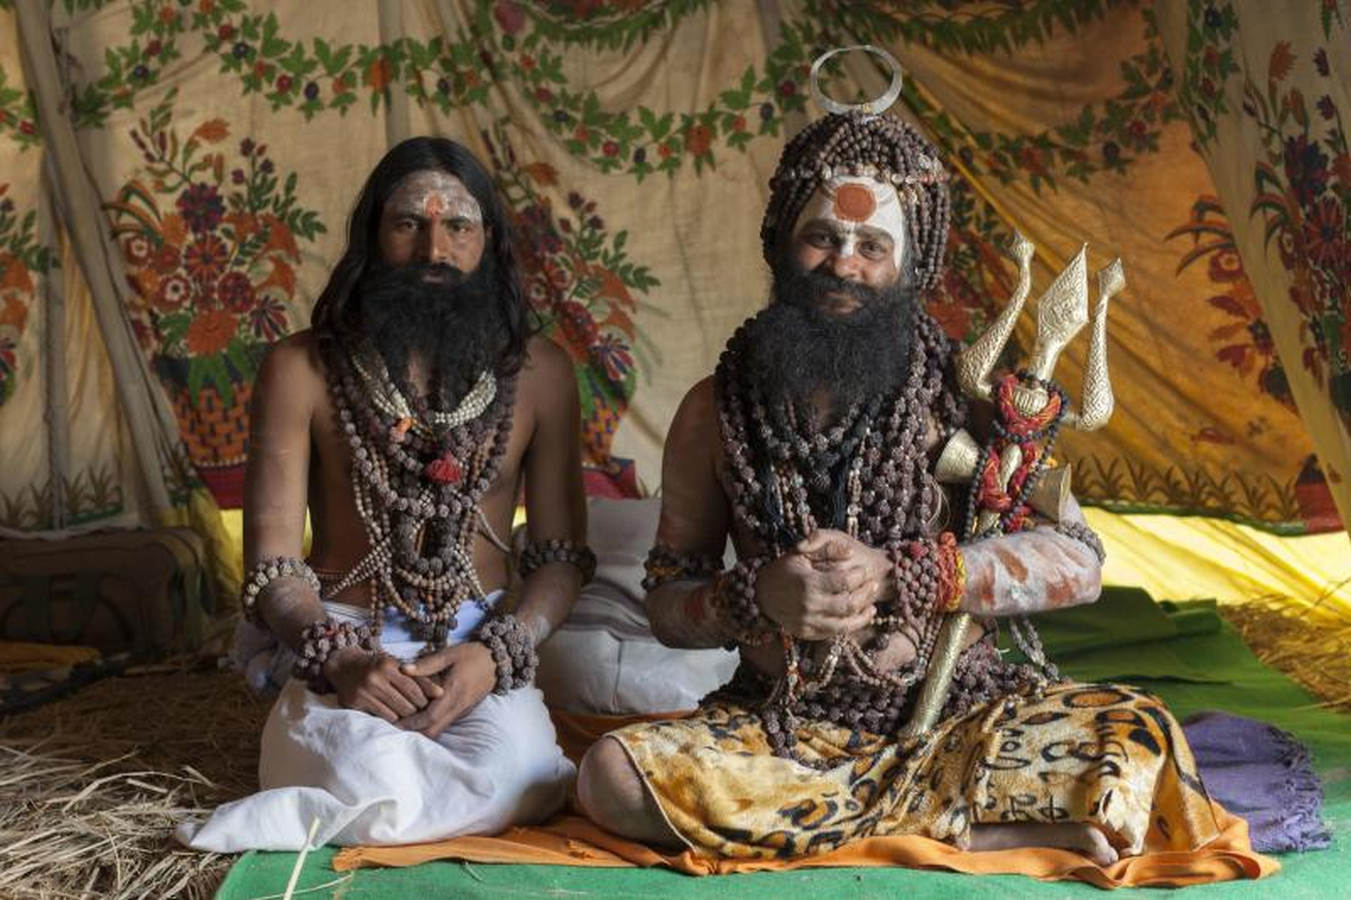 Millones de devotos hindúes se reúnen en el norte de la India para el Magh Mela, uno de los mayores festivales religiosos del mundo que implica baños rituales en las aguas sagradas del río Ganges.